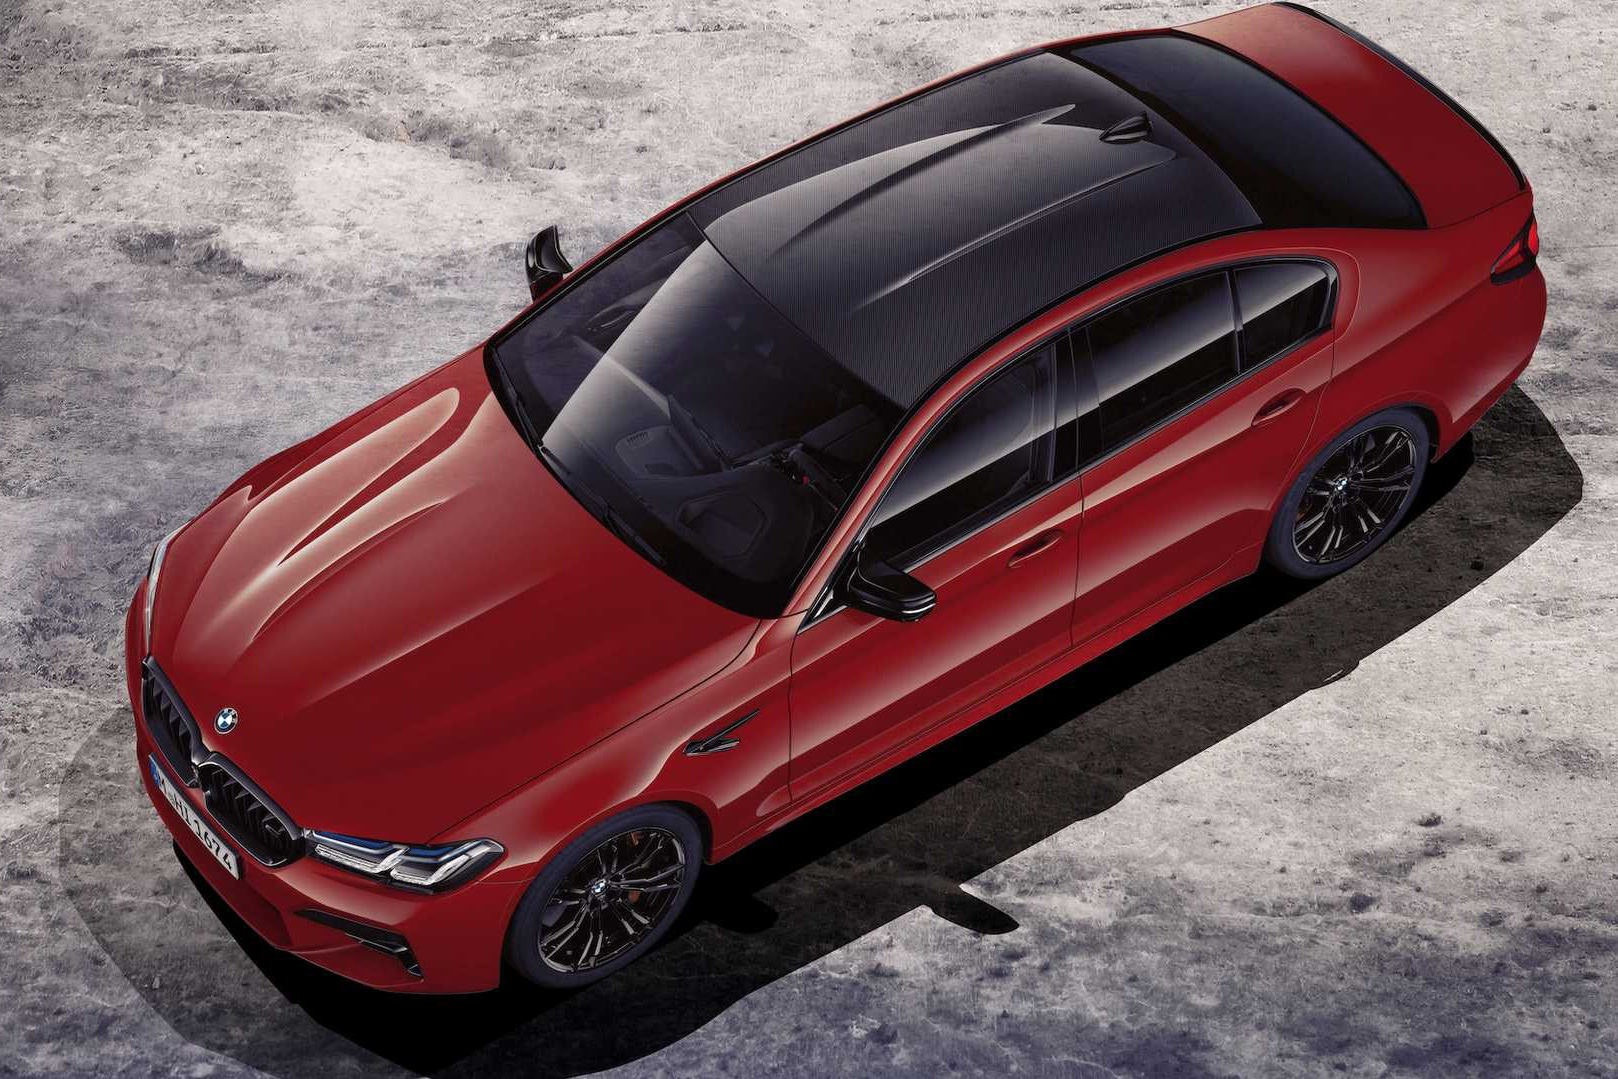 Ra mắt BMW M5 2020: Vóc dáng mới, công nghệ tân tiến để tối đầu Mercedes-AMG E 63